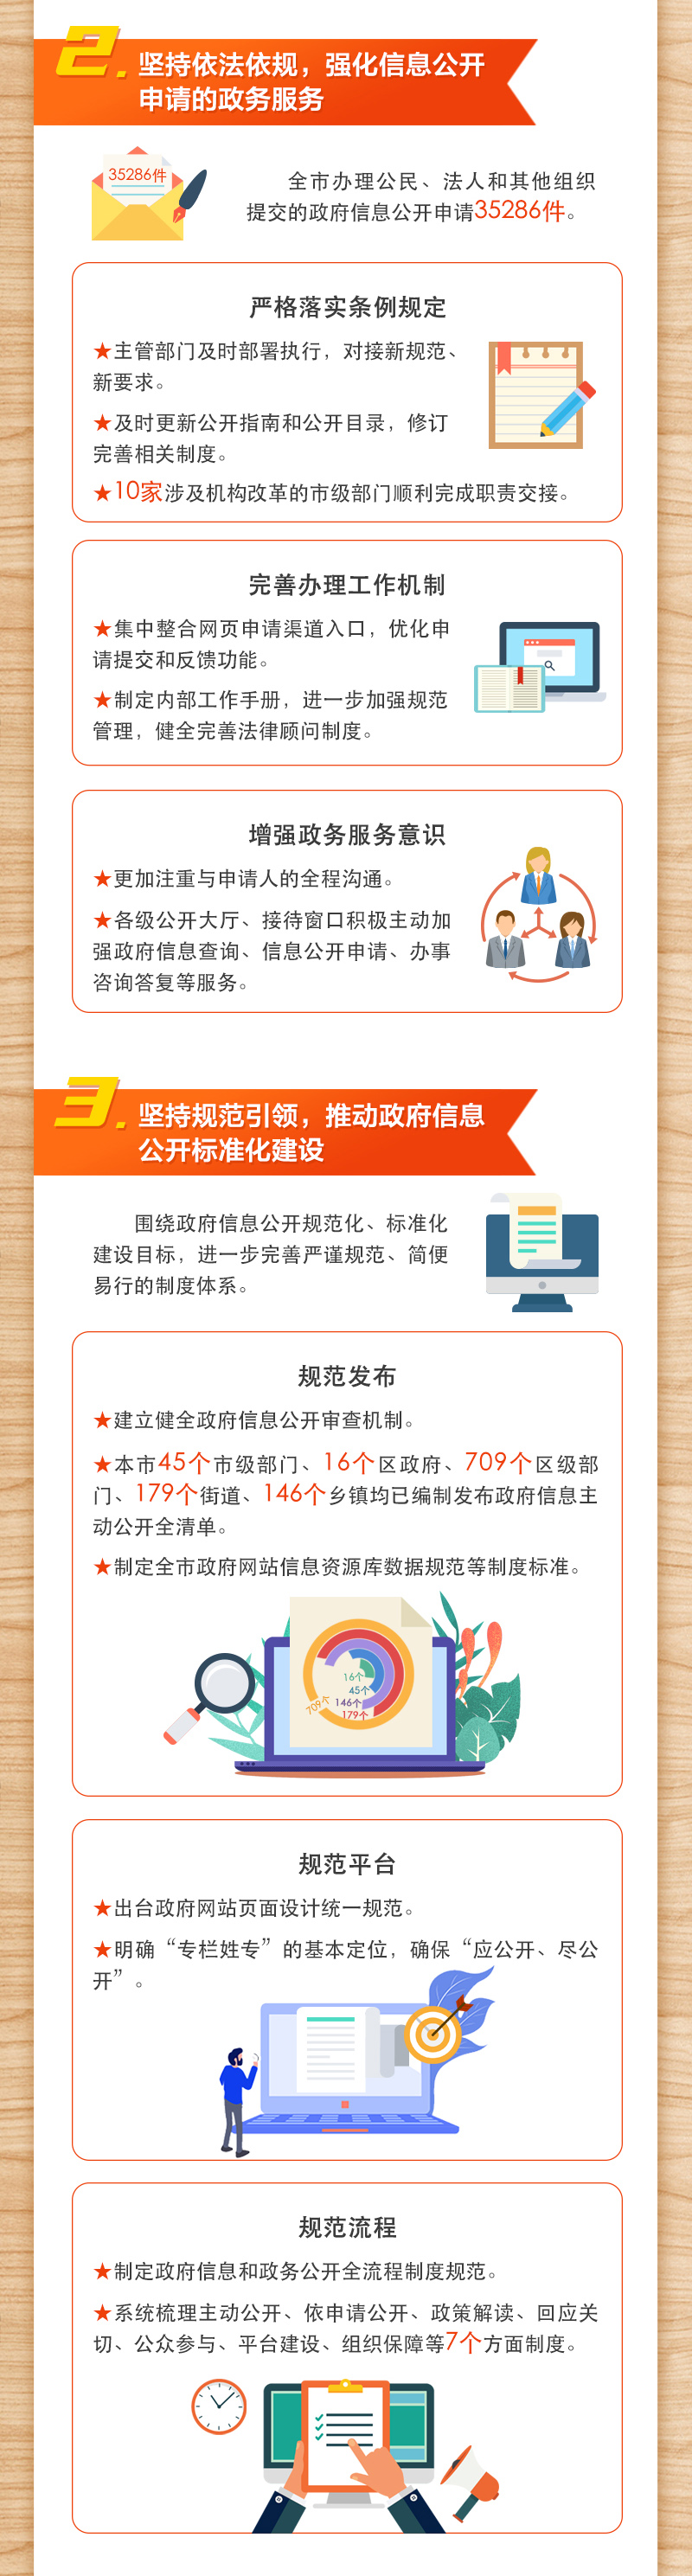 2019年北京市政府信息公开工作年度报告